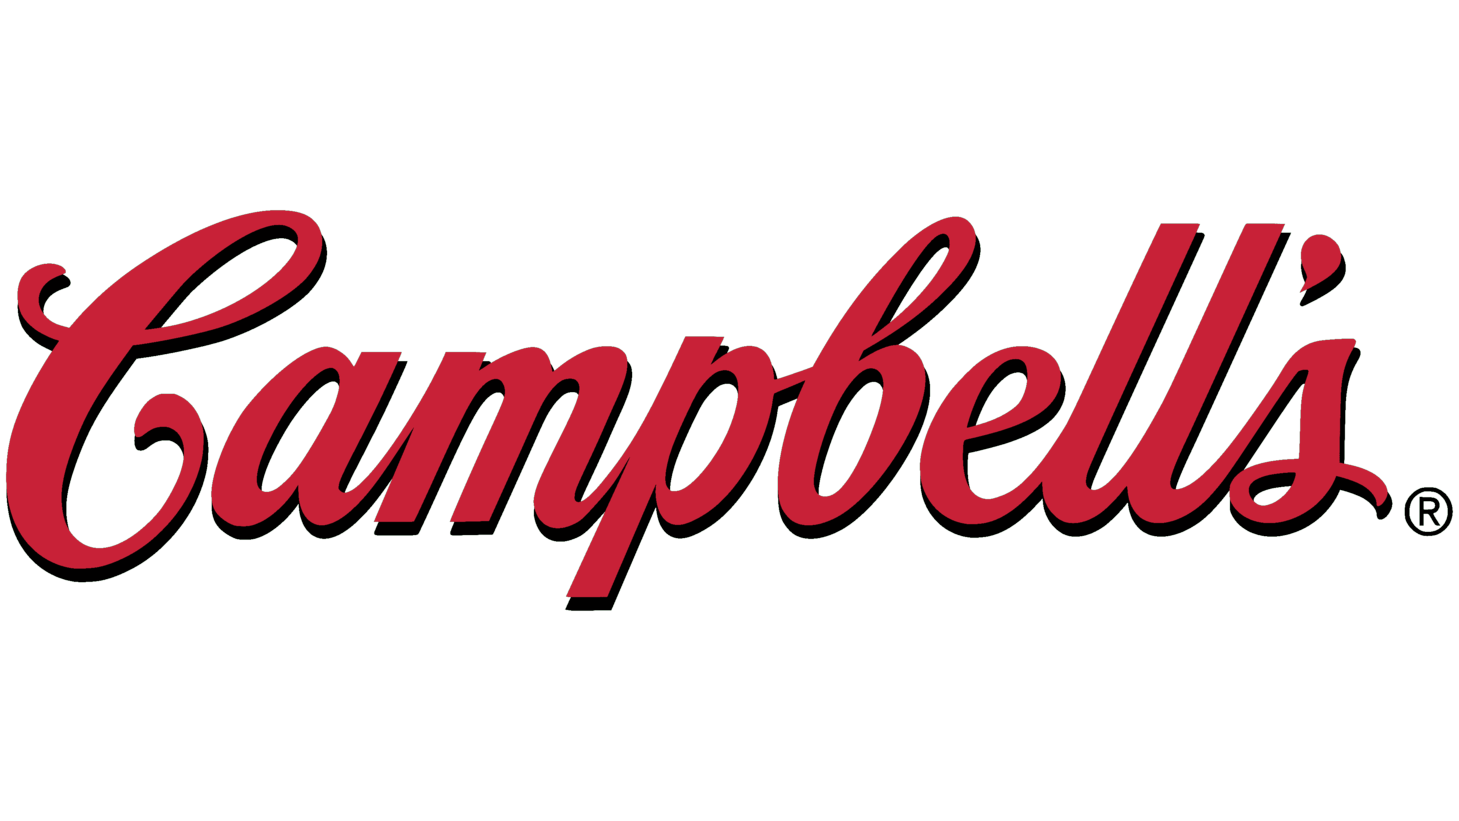 Campbells sign 2000